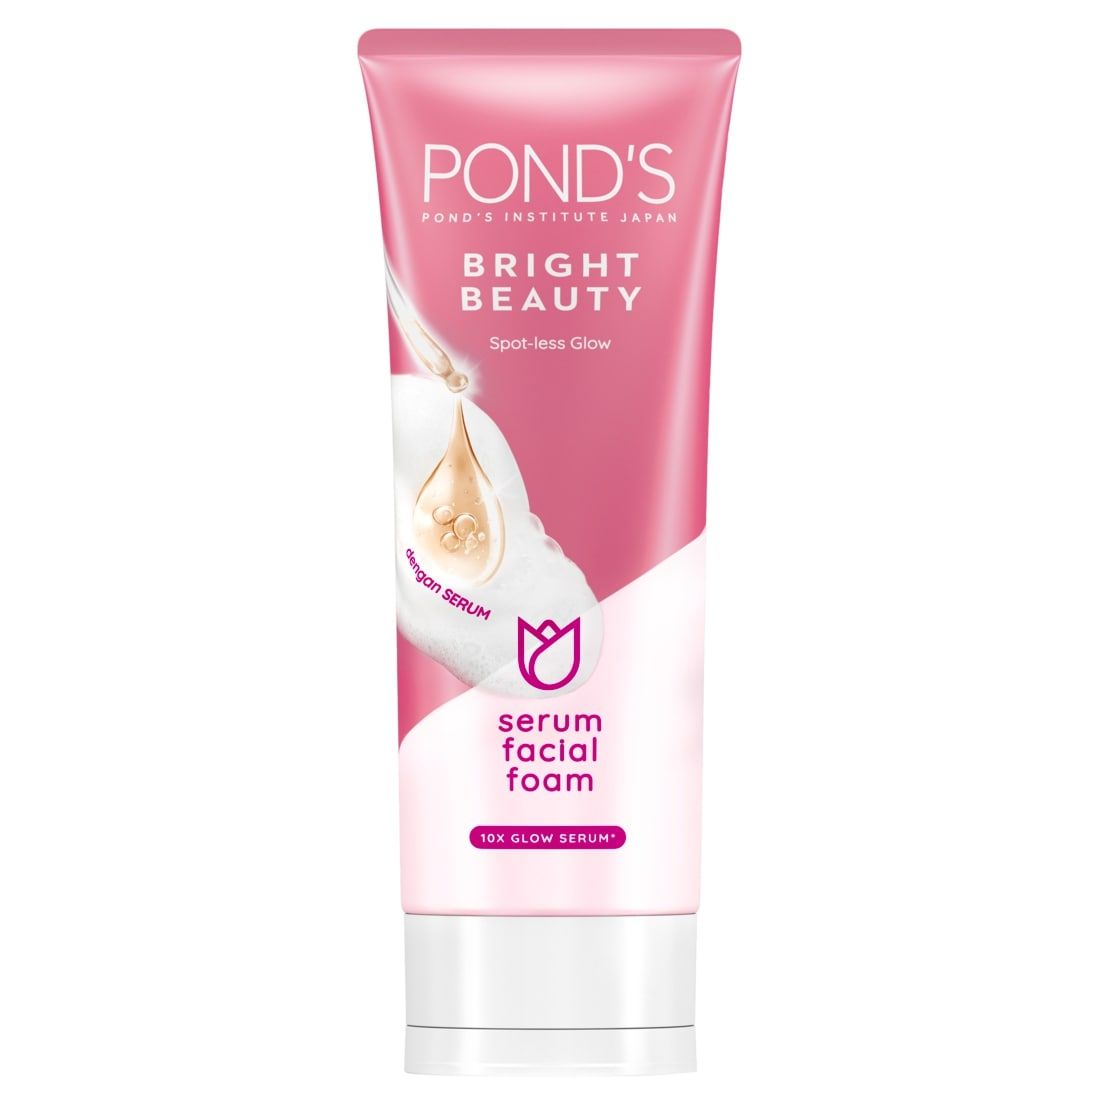 Ponds Bright Beauty Facial Foam 100G - 1